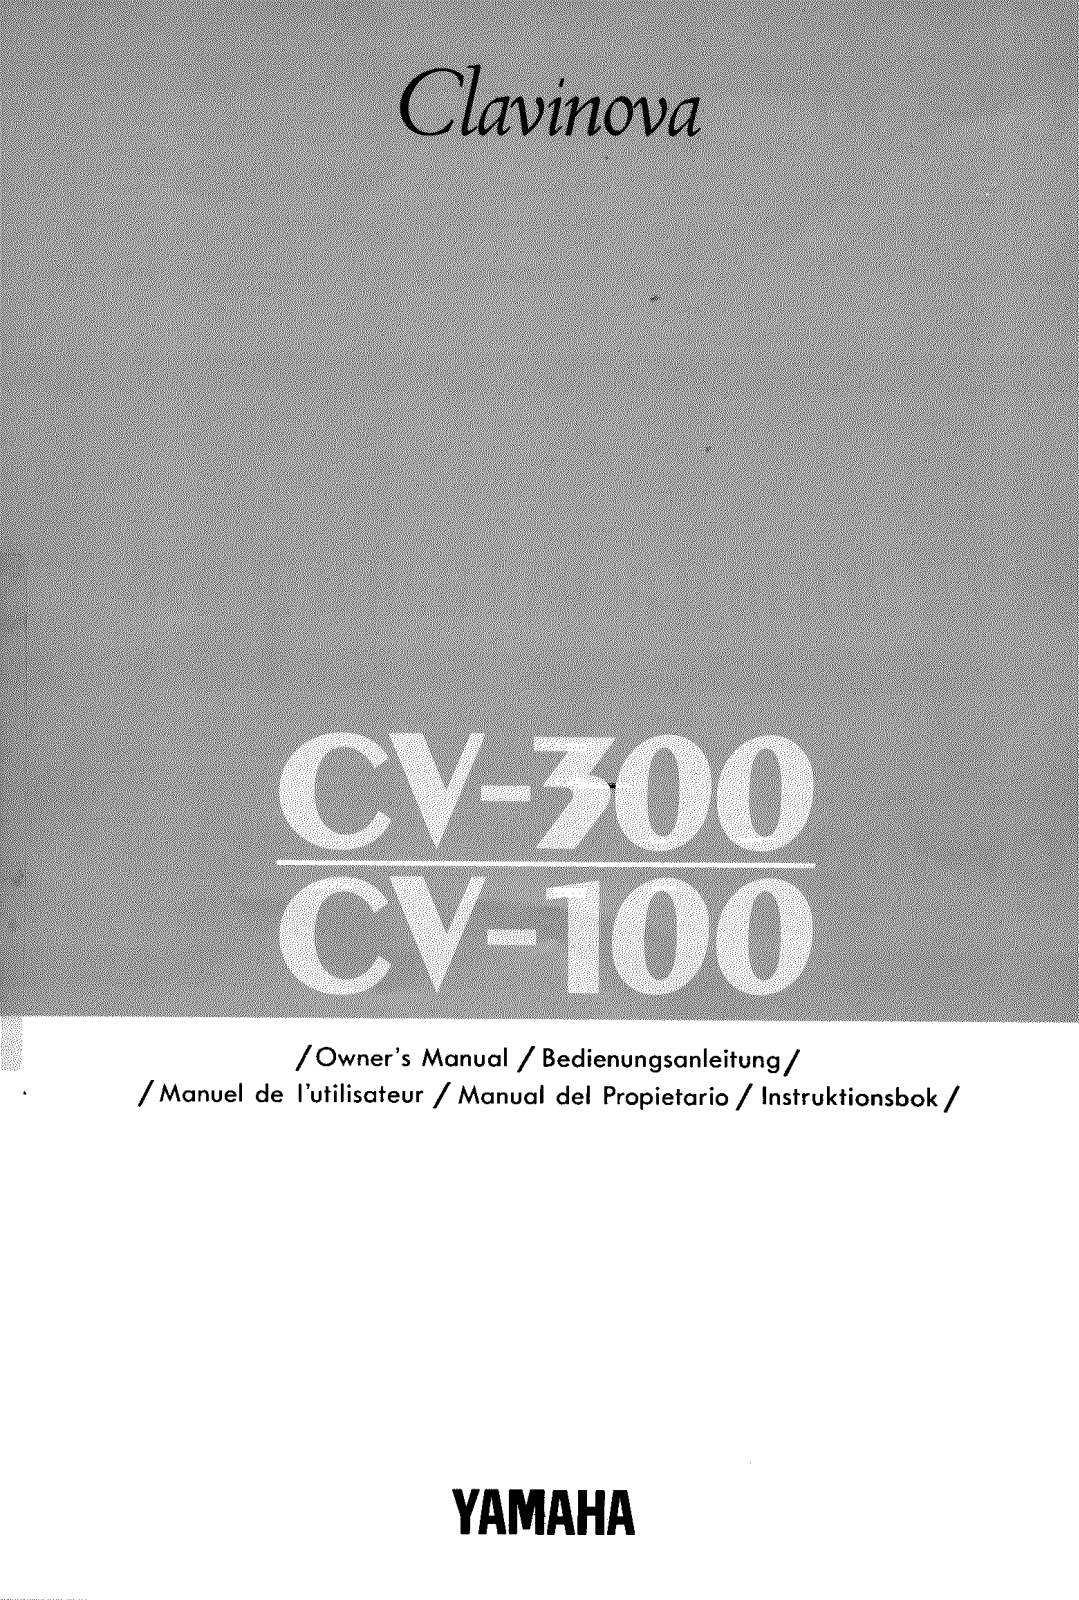 Yamaha CV300 Owner's Manual